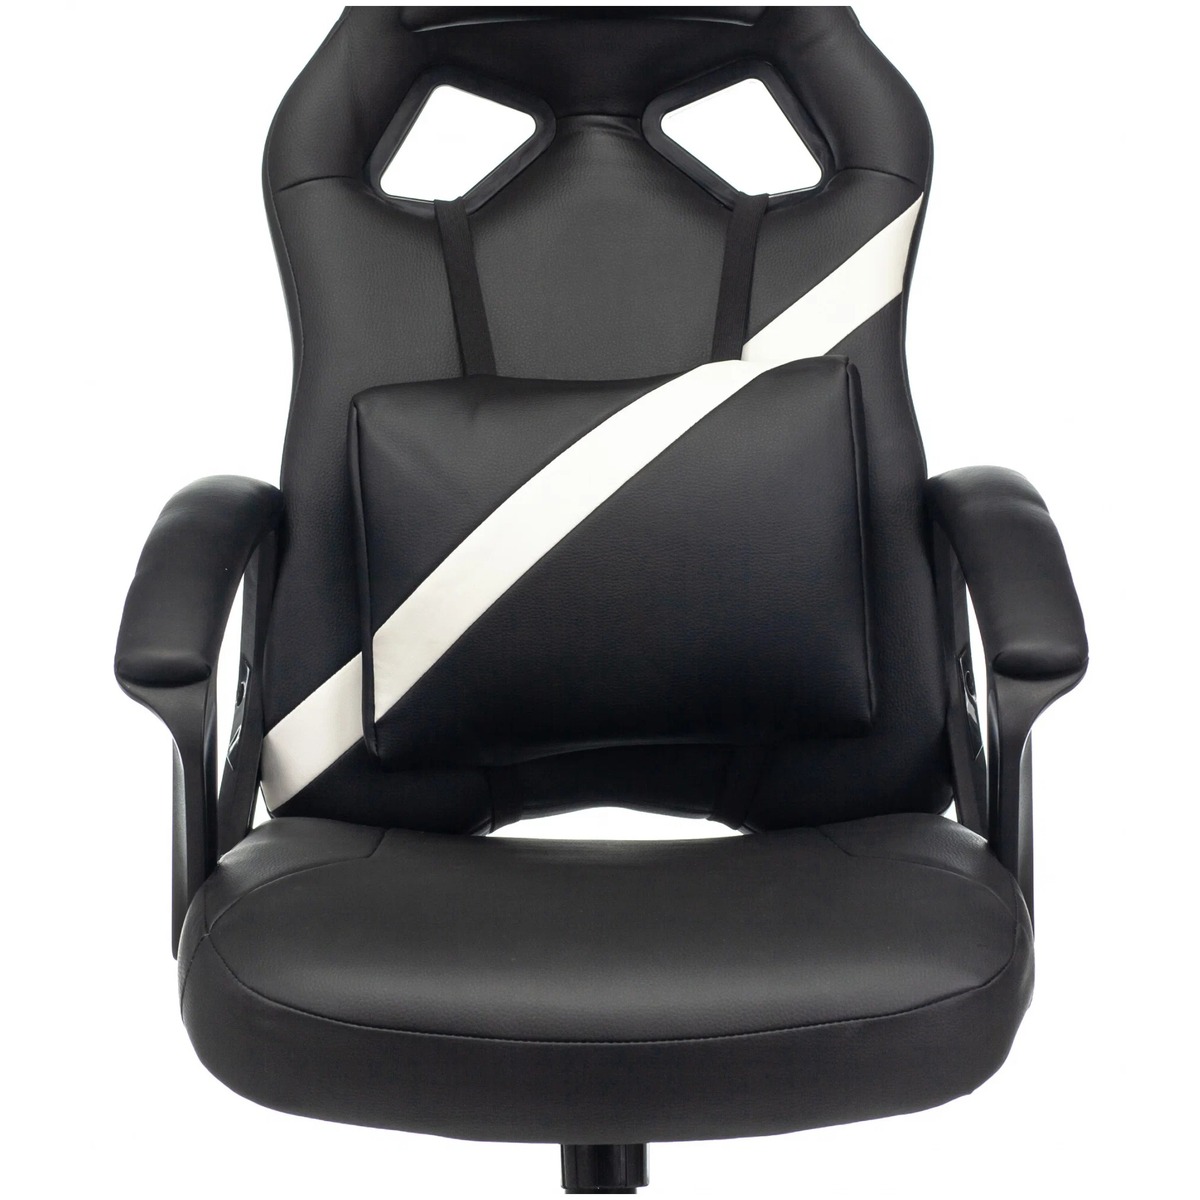 Кресло игровое Zombie DRIVER (Цвет: Black/White)